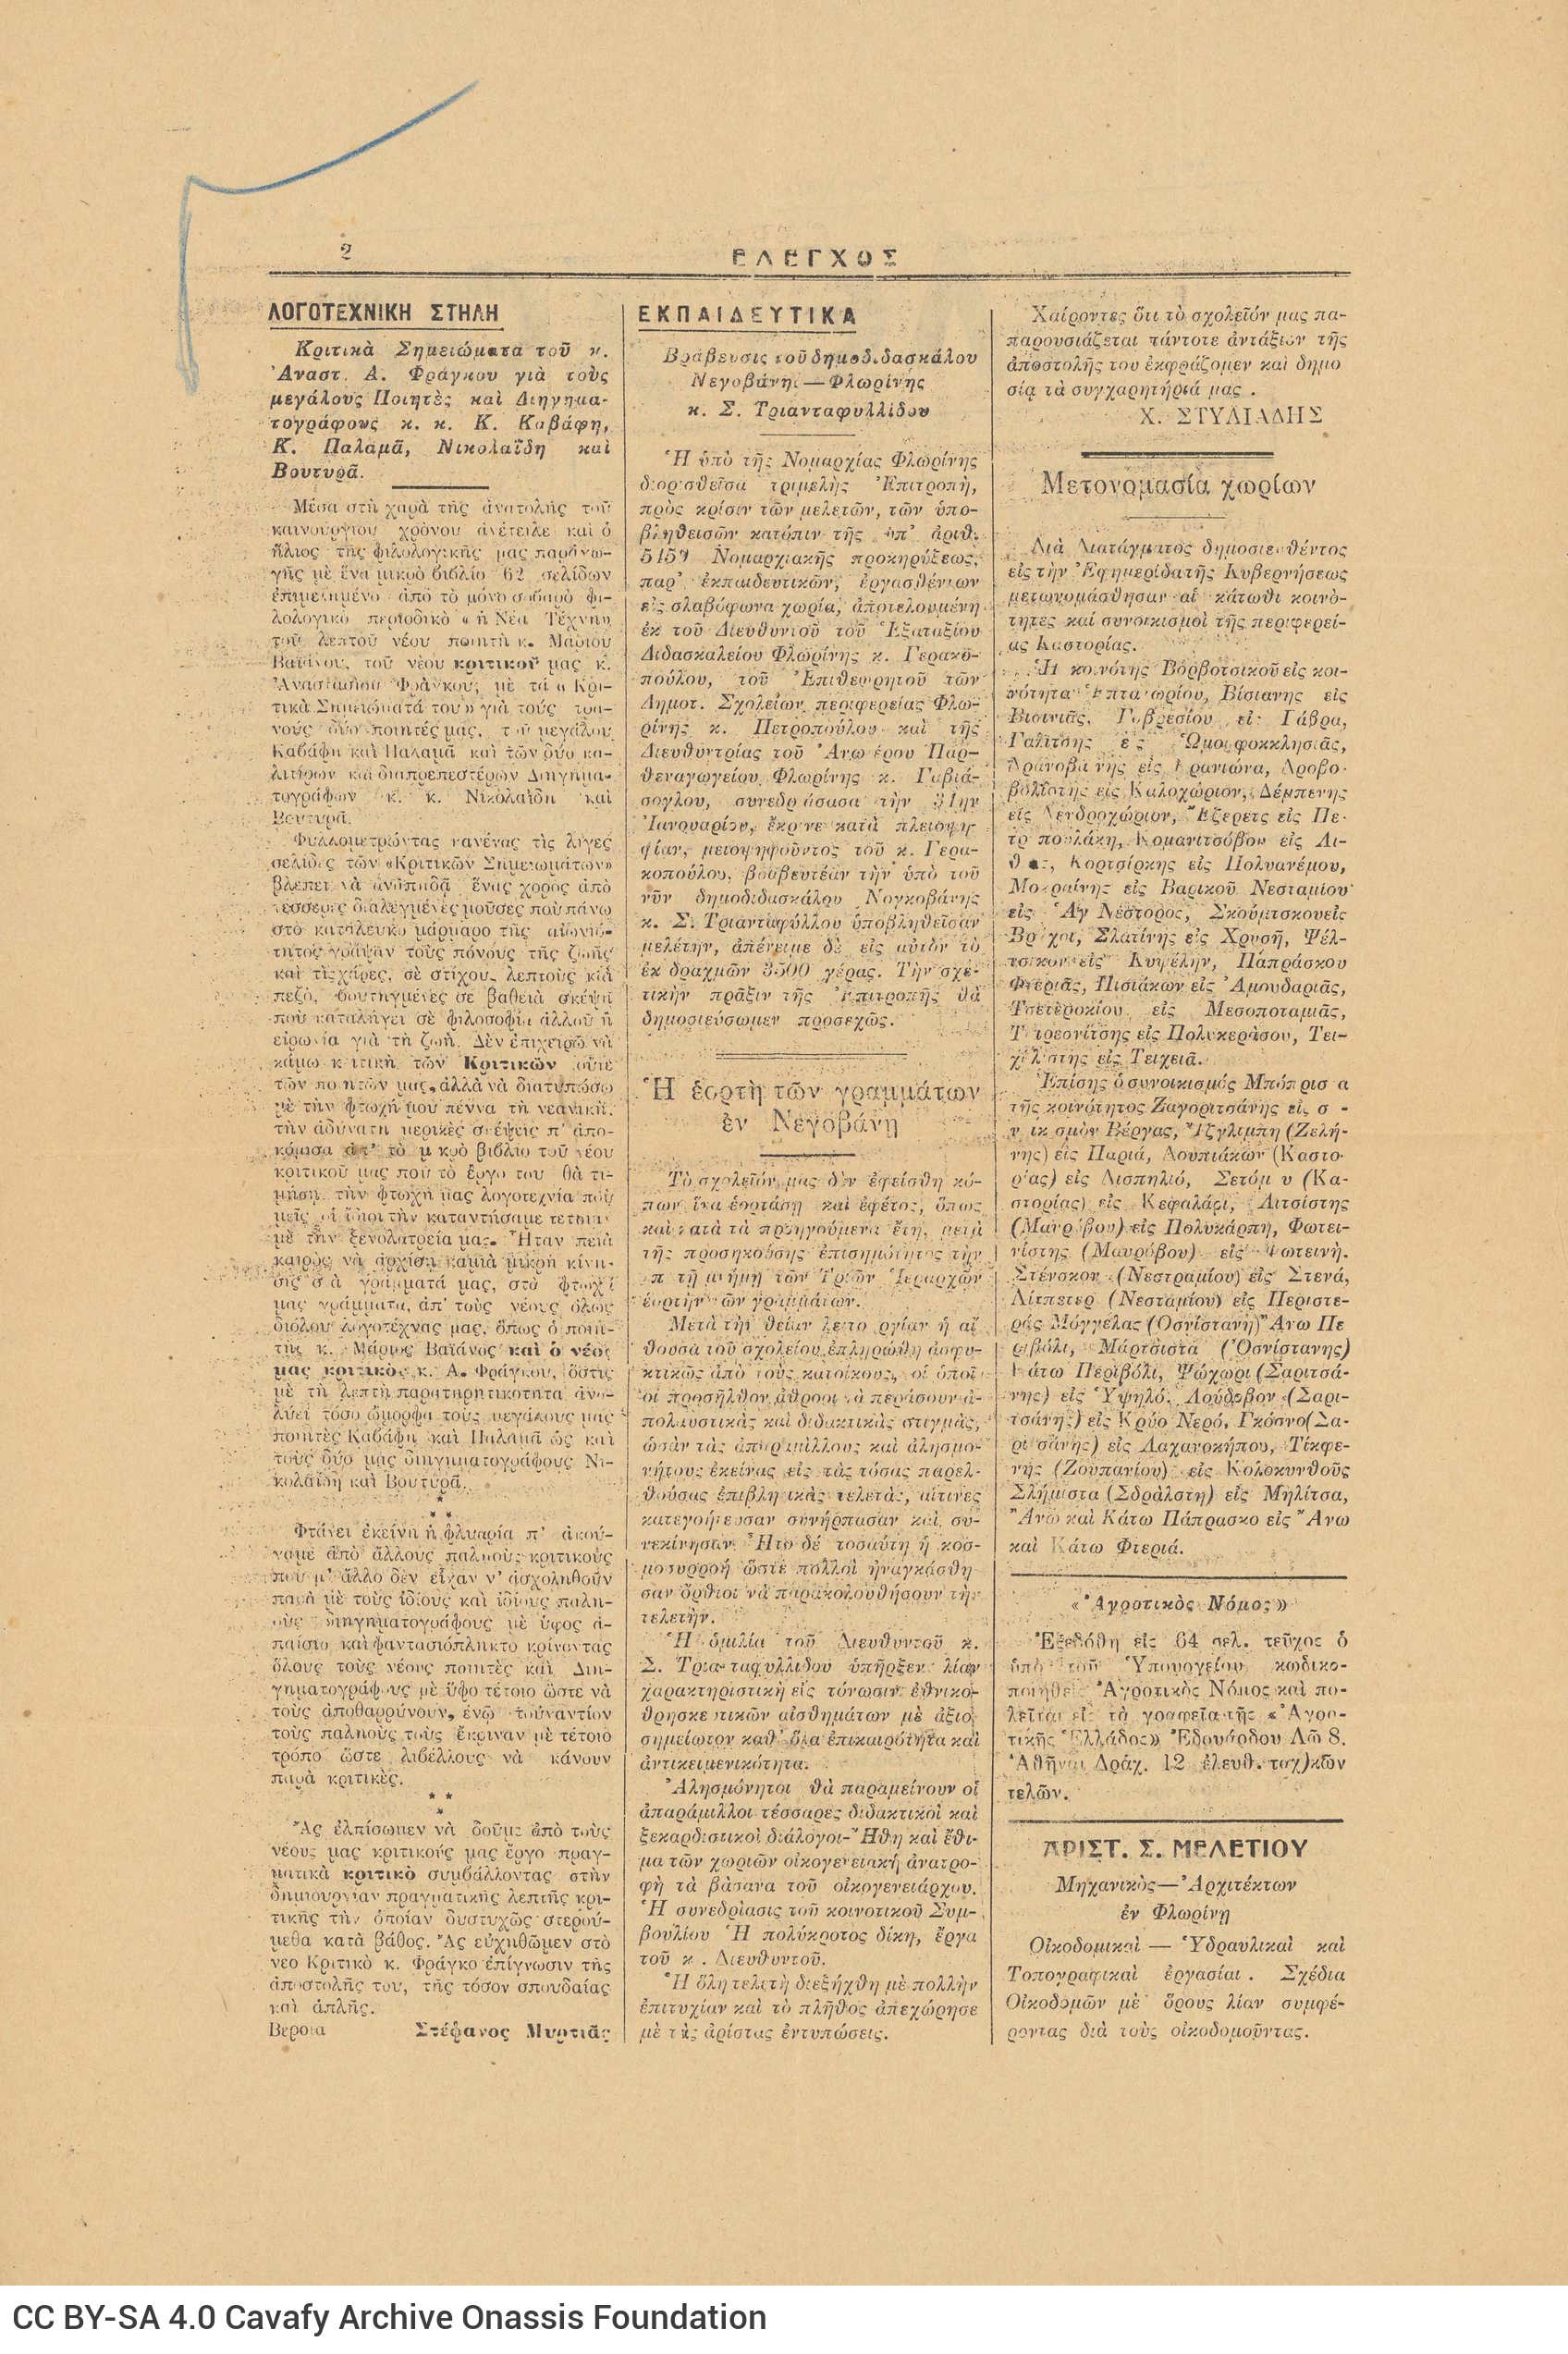 Φύλλο με αριθμό 267 της εφημερίδας *Έλεγχος* που εκδιδόταν στη Φλώρινα